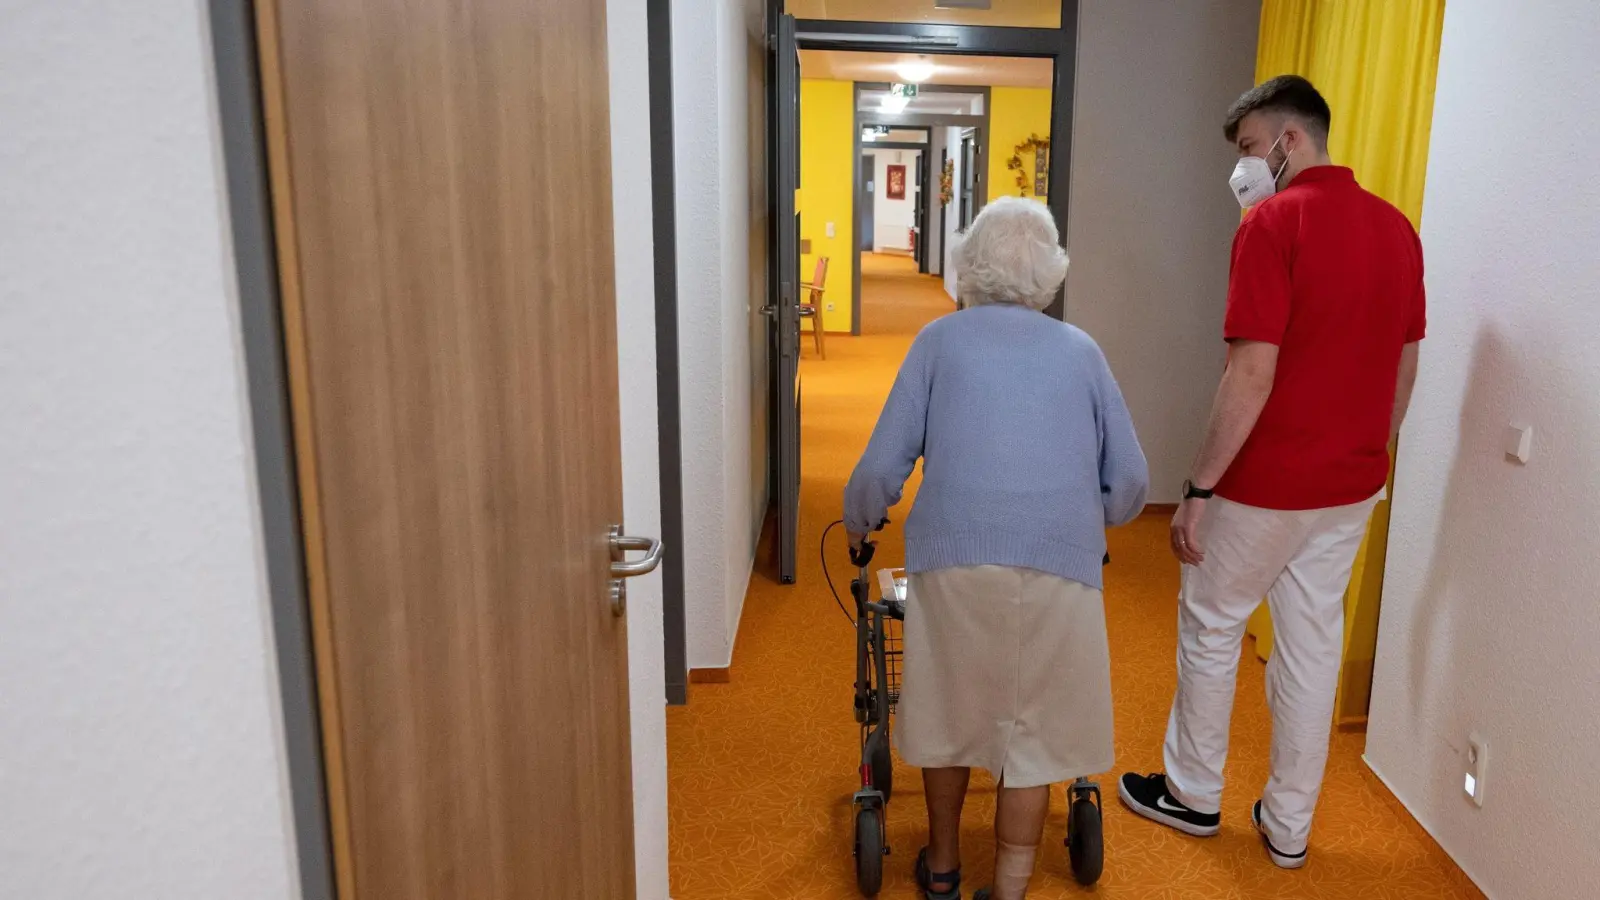 Die Zahl der Corona-Fälle steigt in Deutschland weiter an - auch in Alten- und Pflegeheimen. (Foto: Bernd Weißbrod/dpa/Symbolbild)